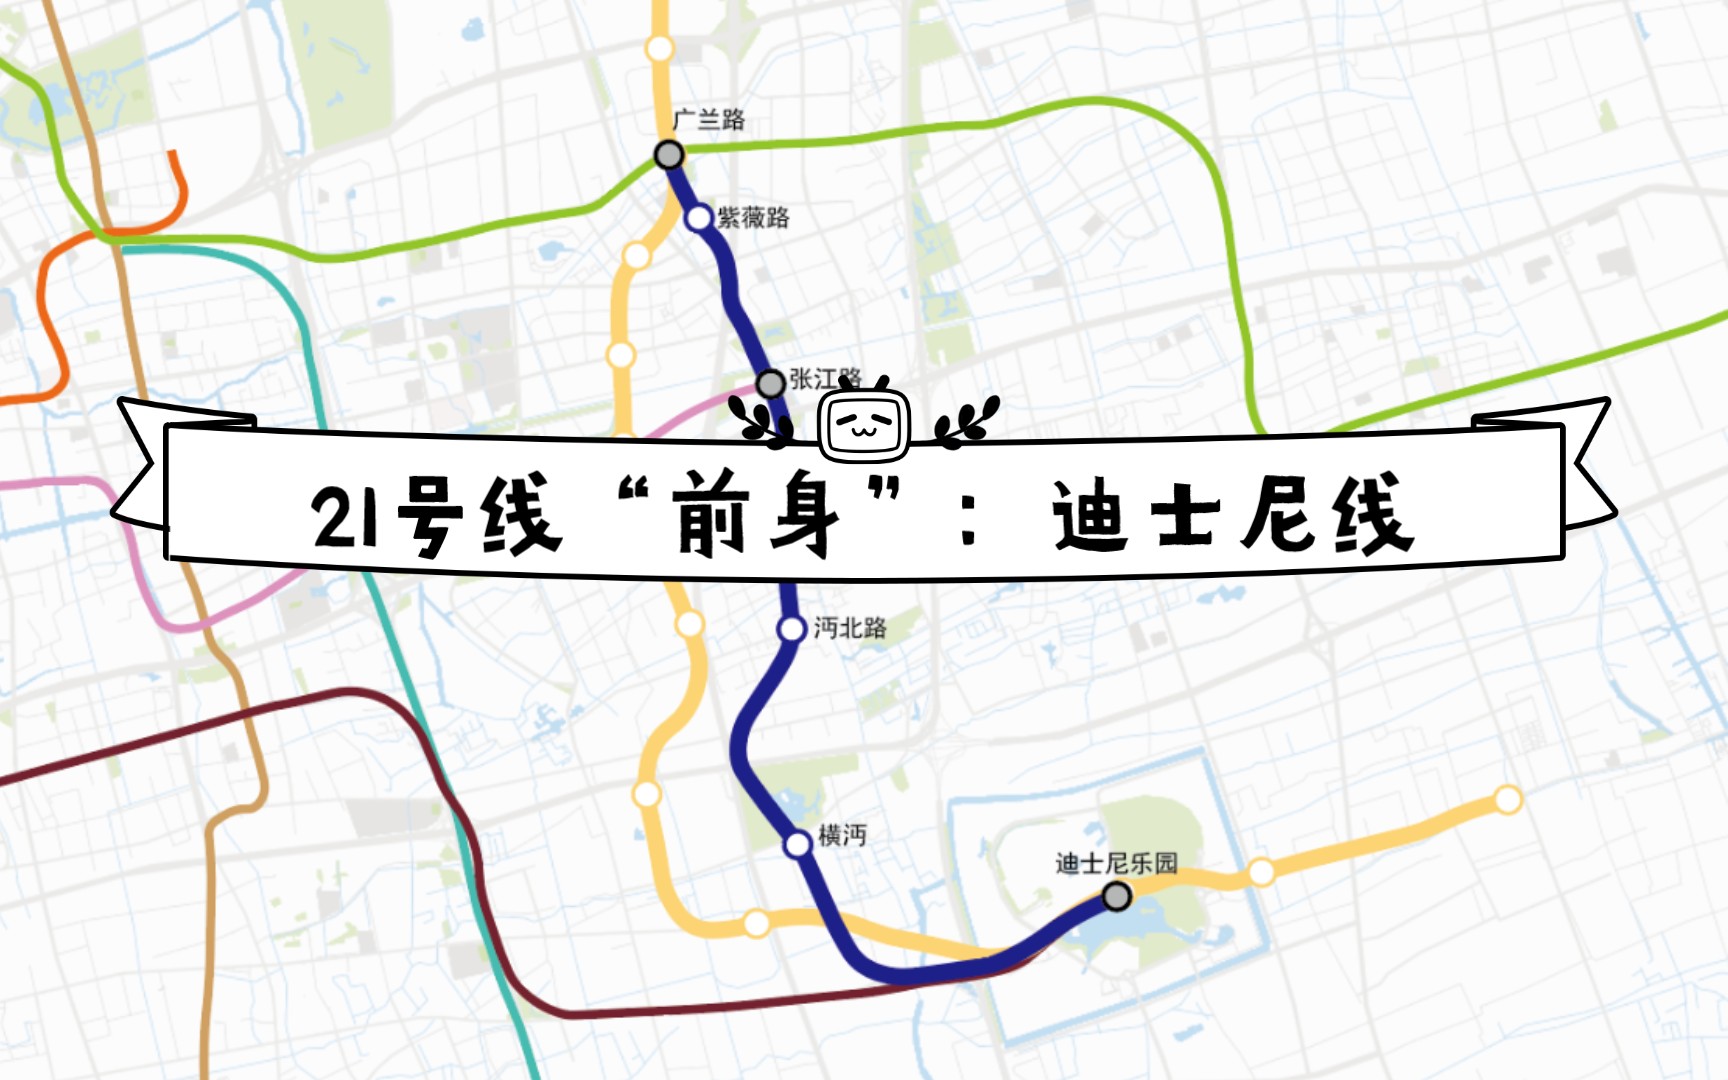 上海地铁21号线路图图片